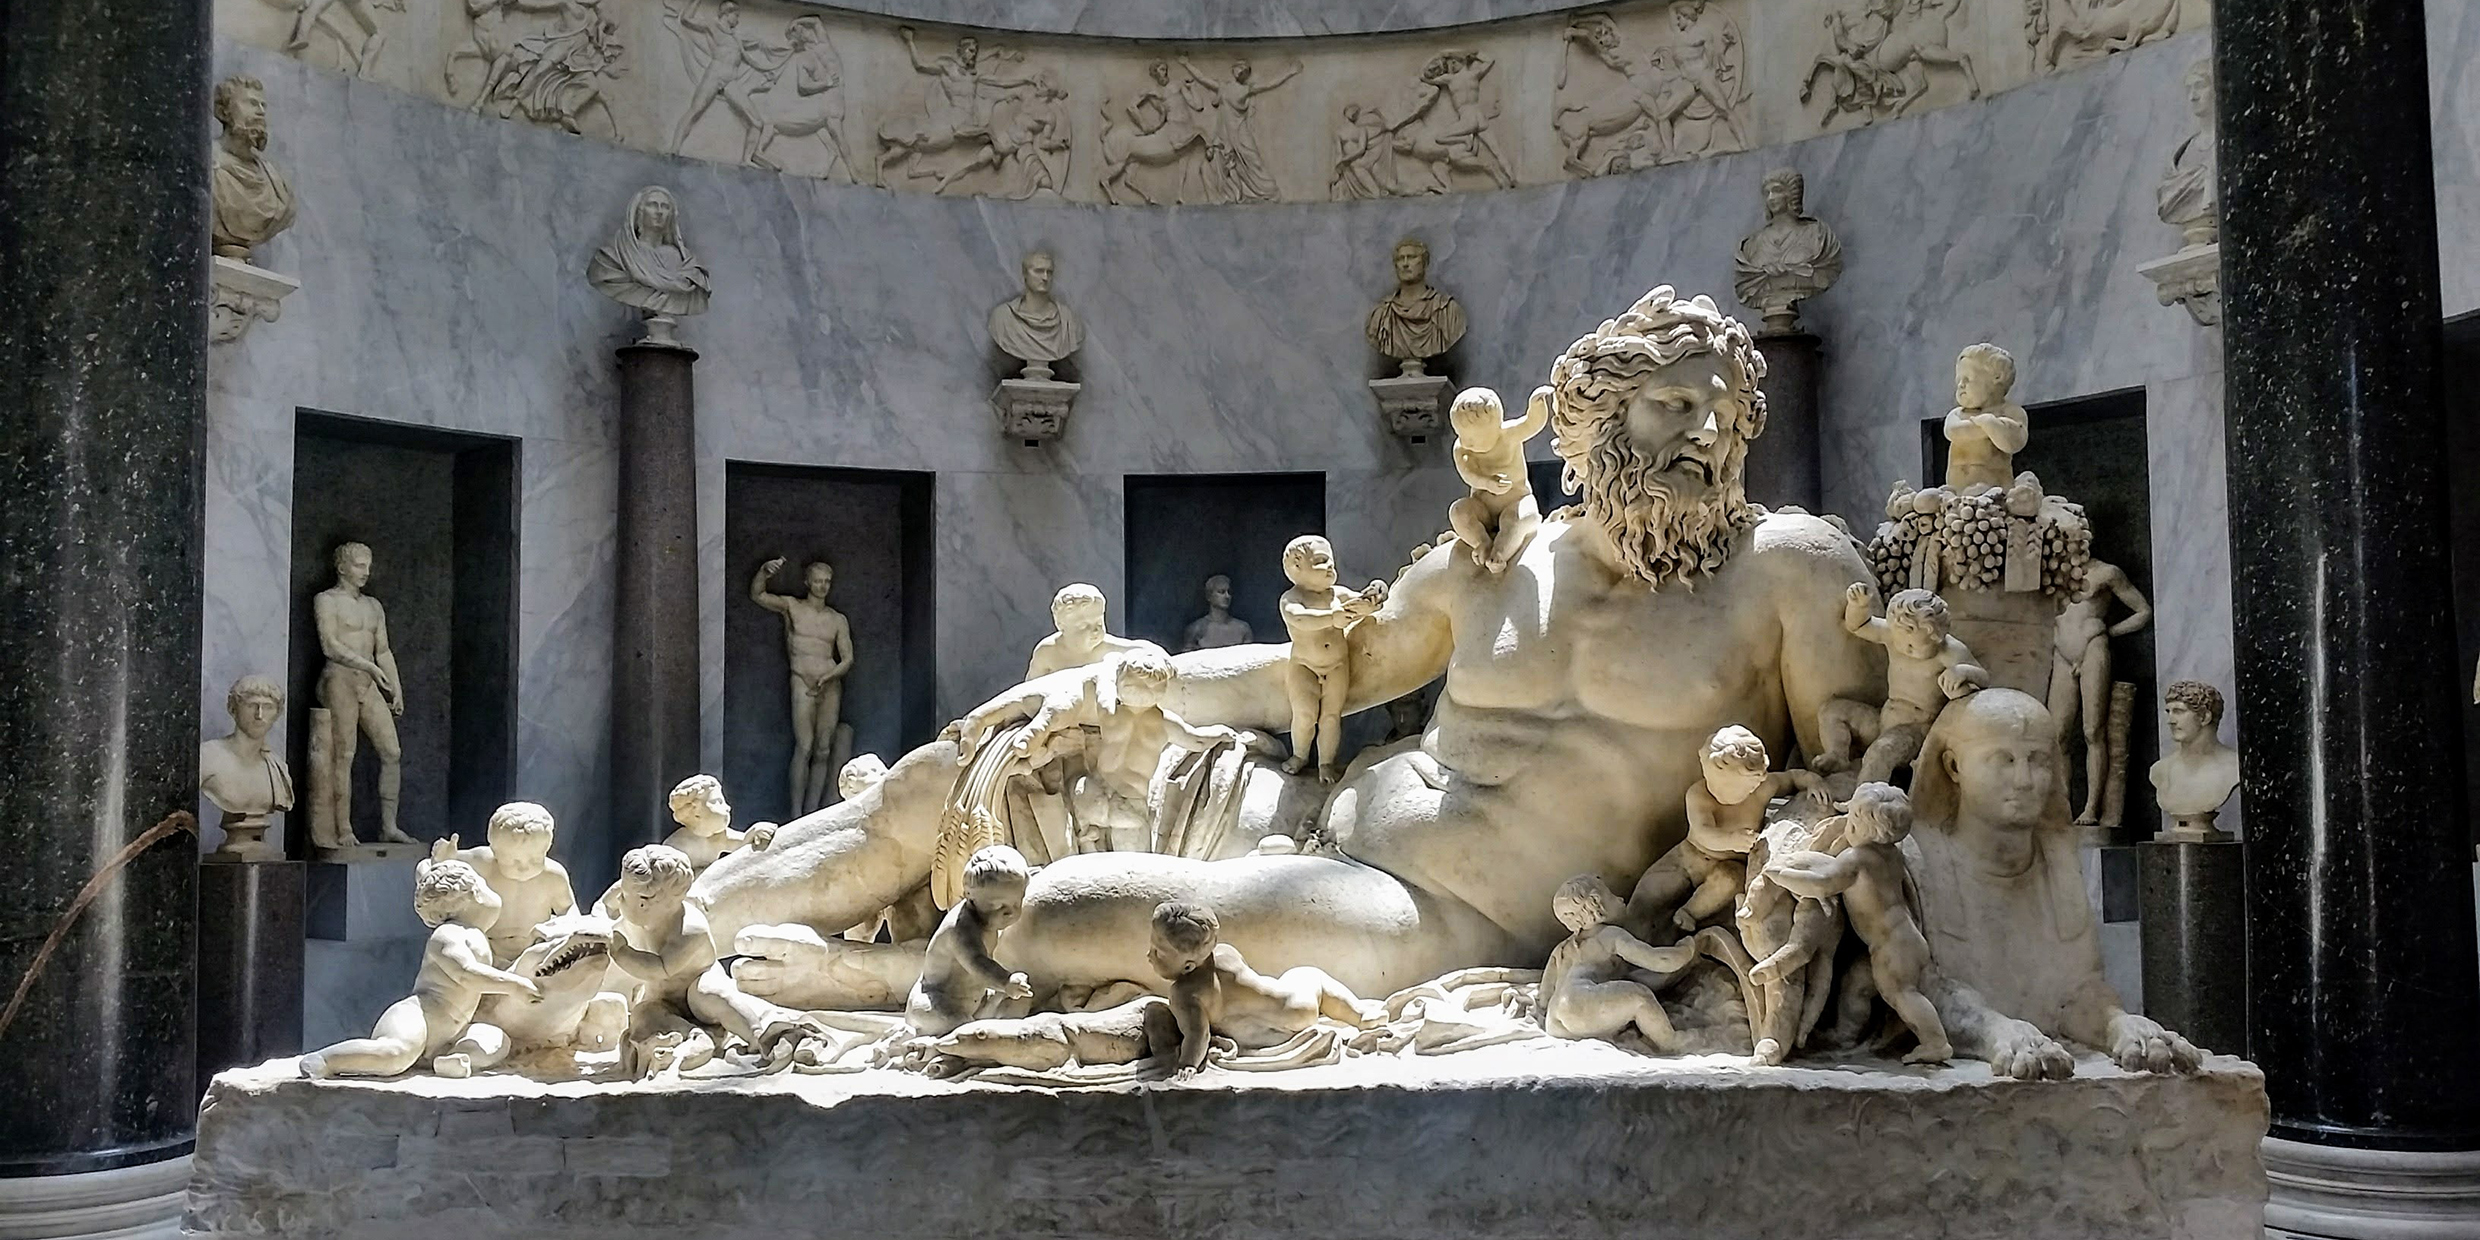 Image of a sculpture depicting Cronus of Greek mythology